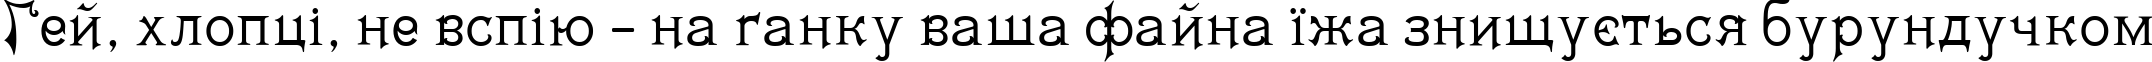 Пример написания шрифтом Matilda текста на украинском